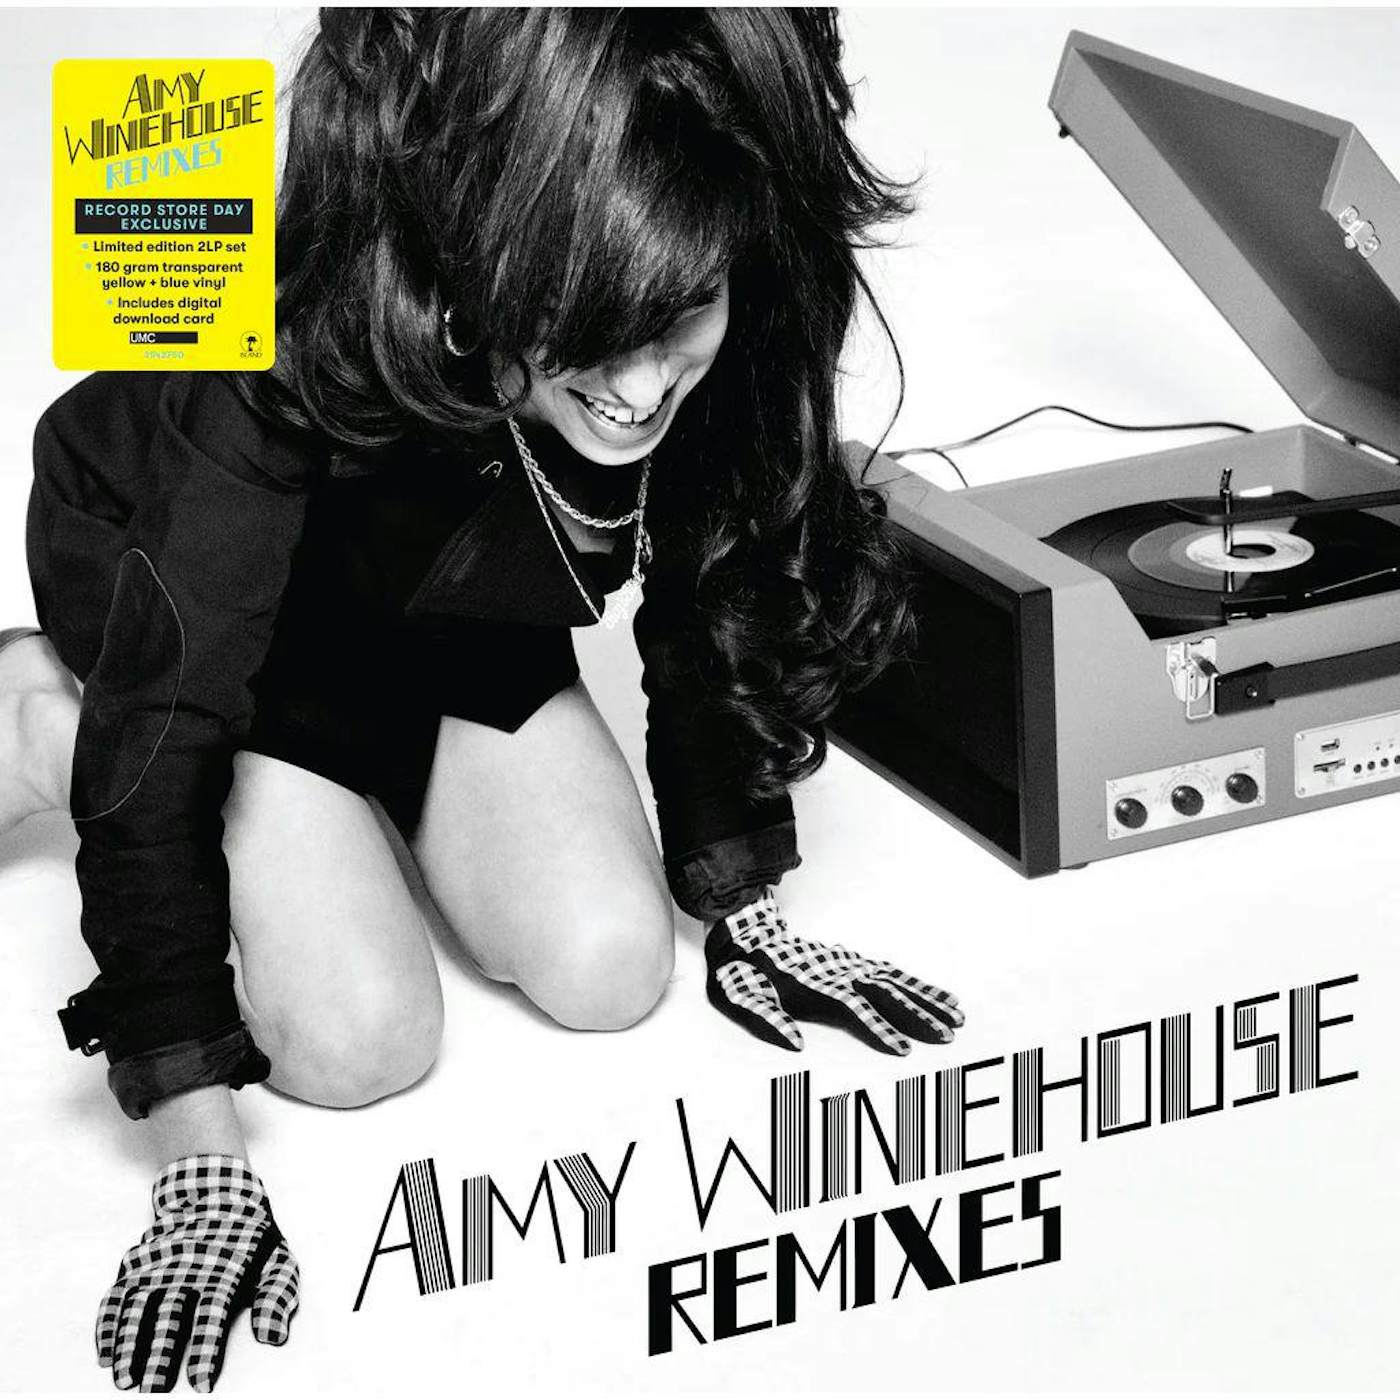 Amy Winehouse REMIXES Vinyl Record